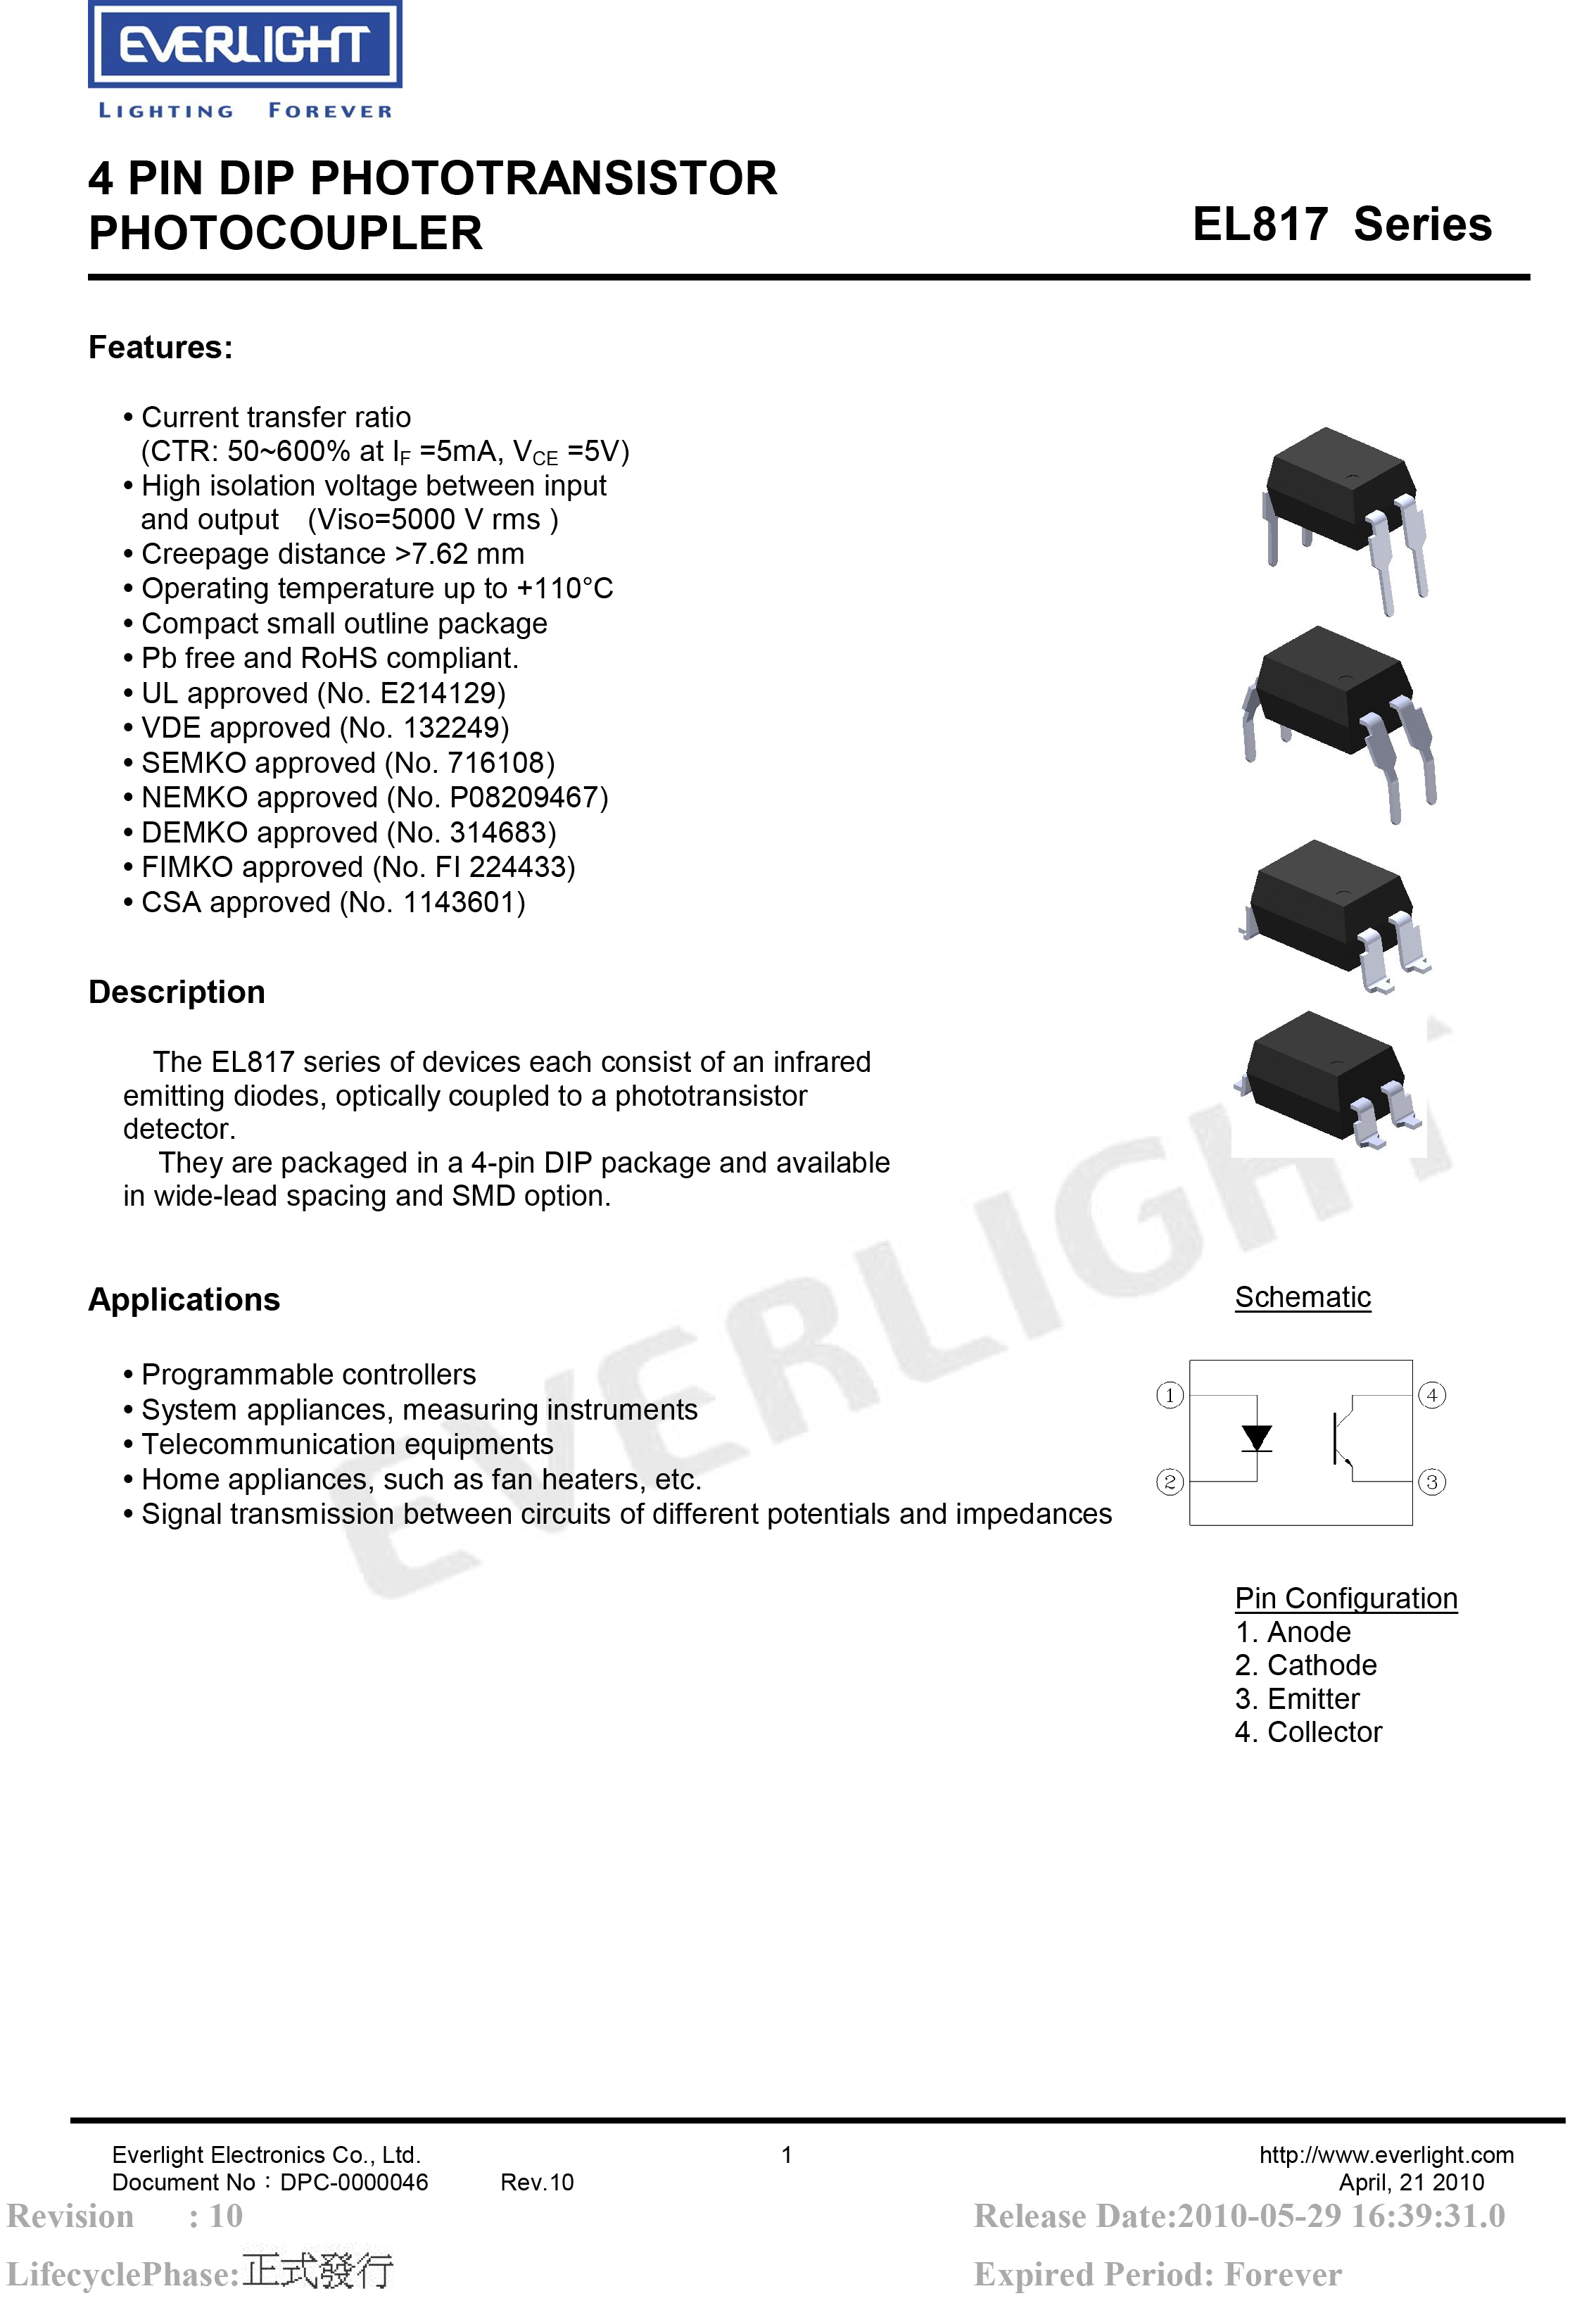 亿光直插光耦EL817 DIP-4光电耦合器规格书PDF